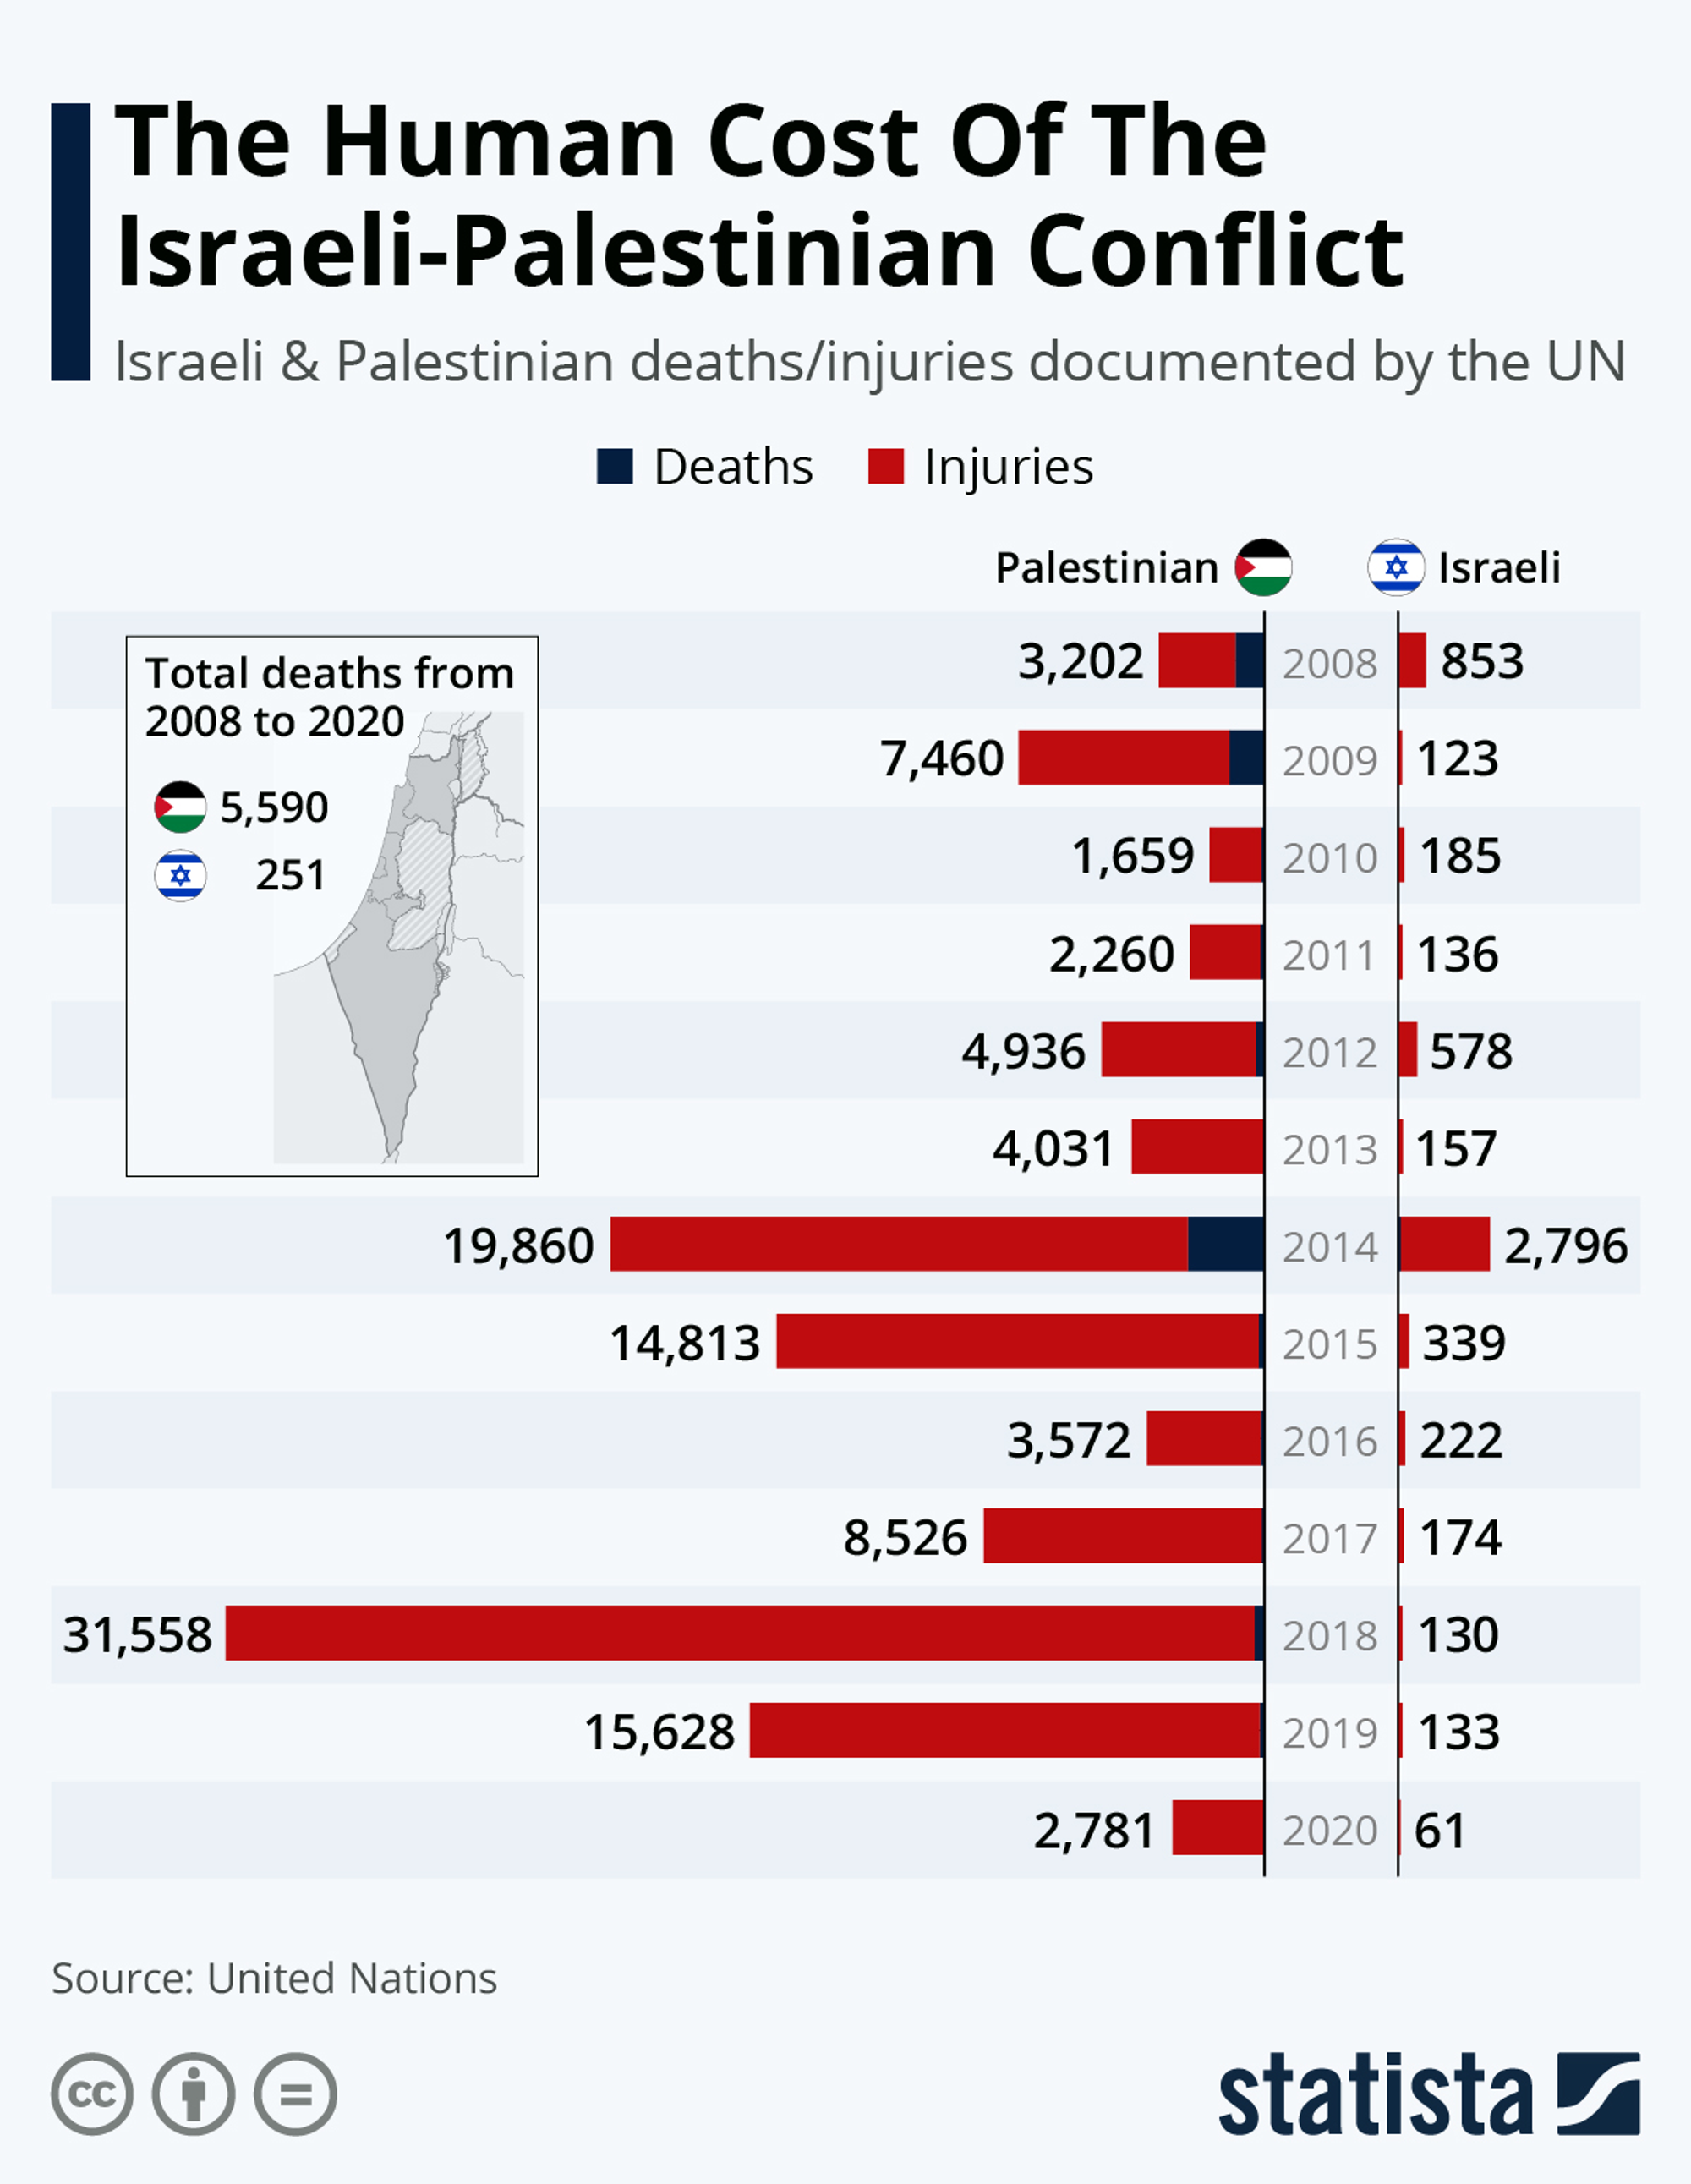 Morts et blessées du conflit israélo-palestinien entre 2008 et 2020. Source statista  